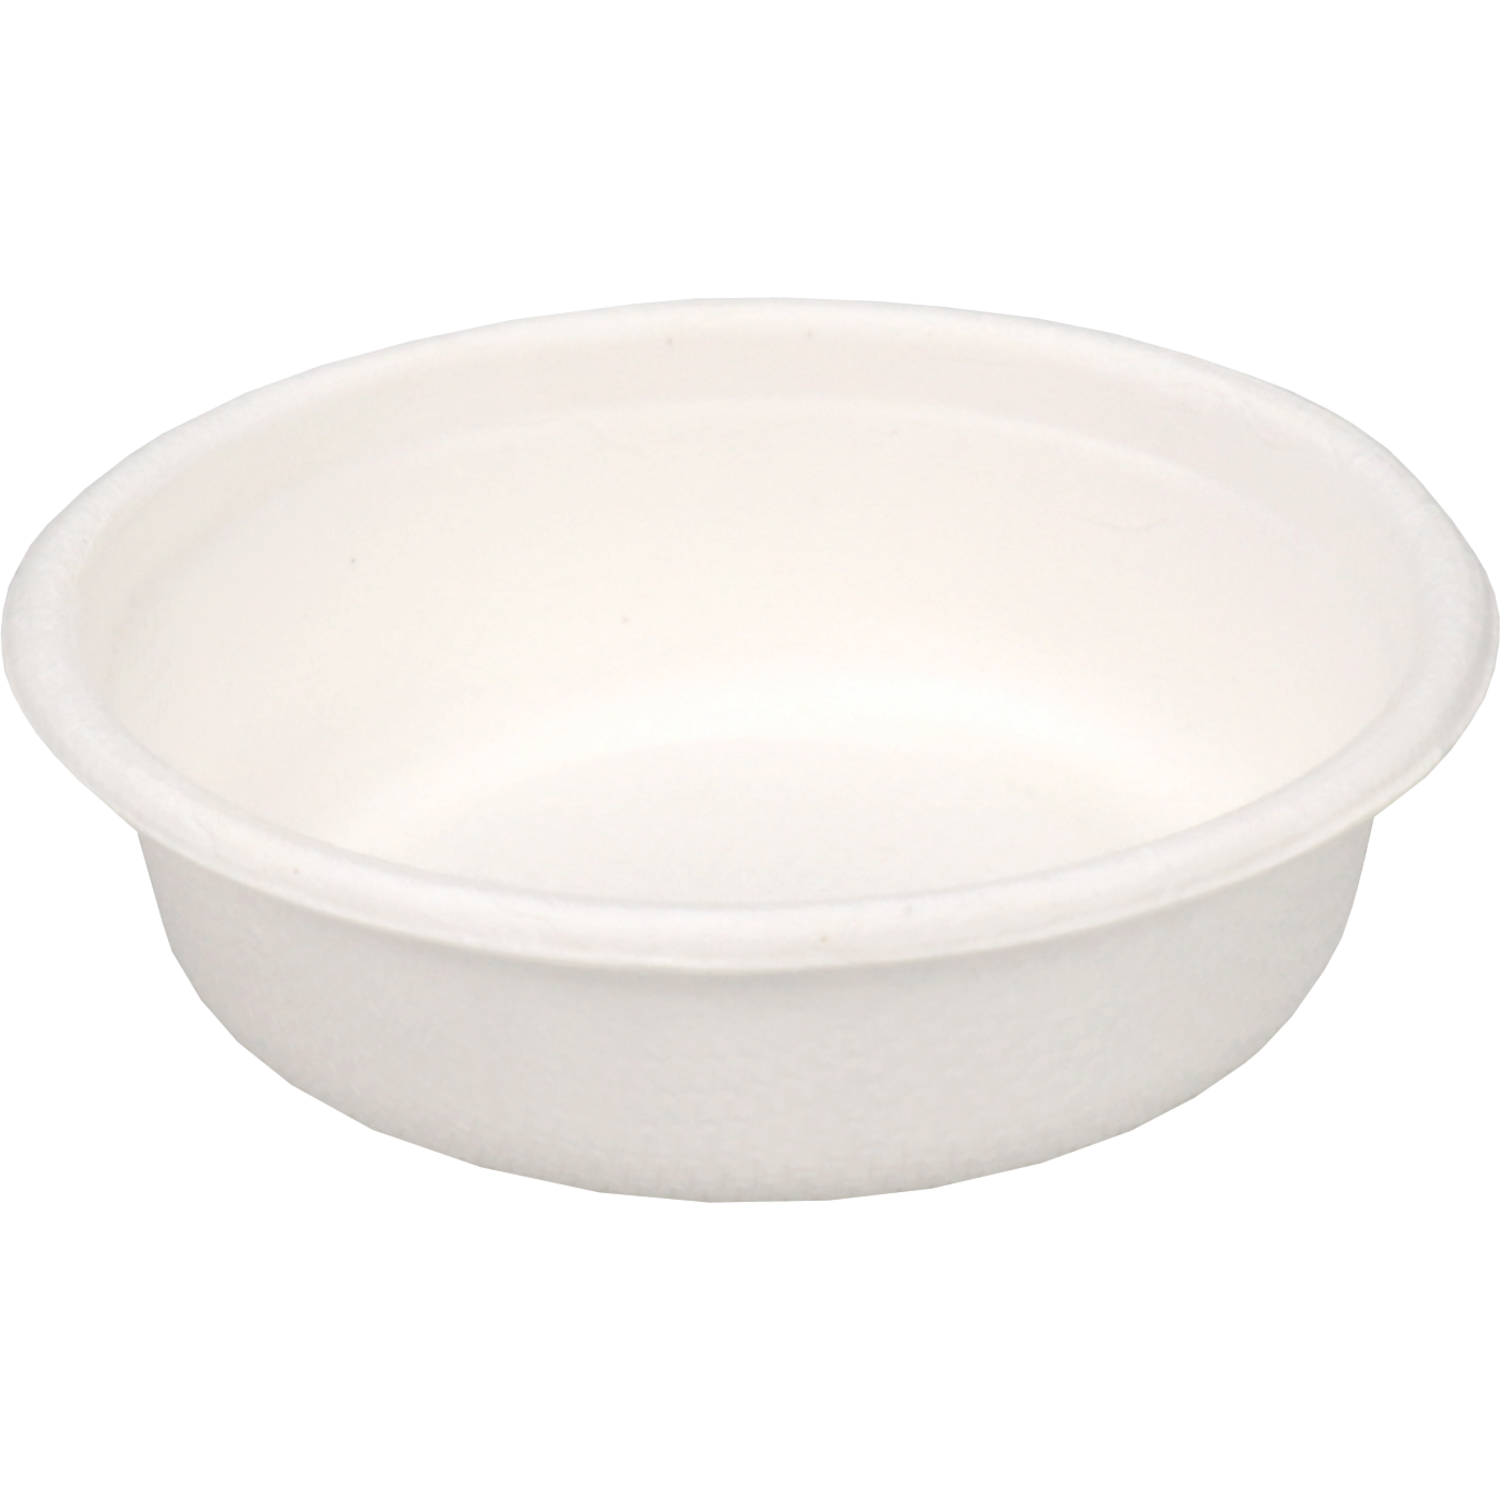 Depa® Bowl, sausbakje, bagasse (sugarcane pulp), 30ml, white 1